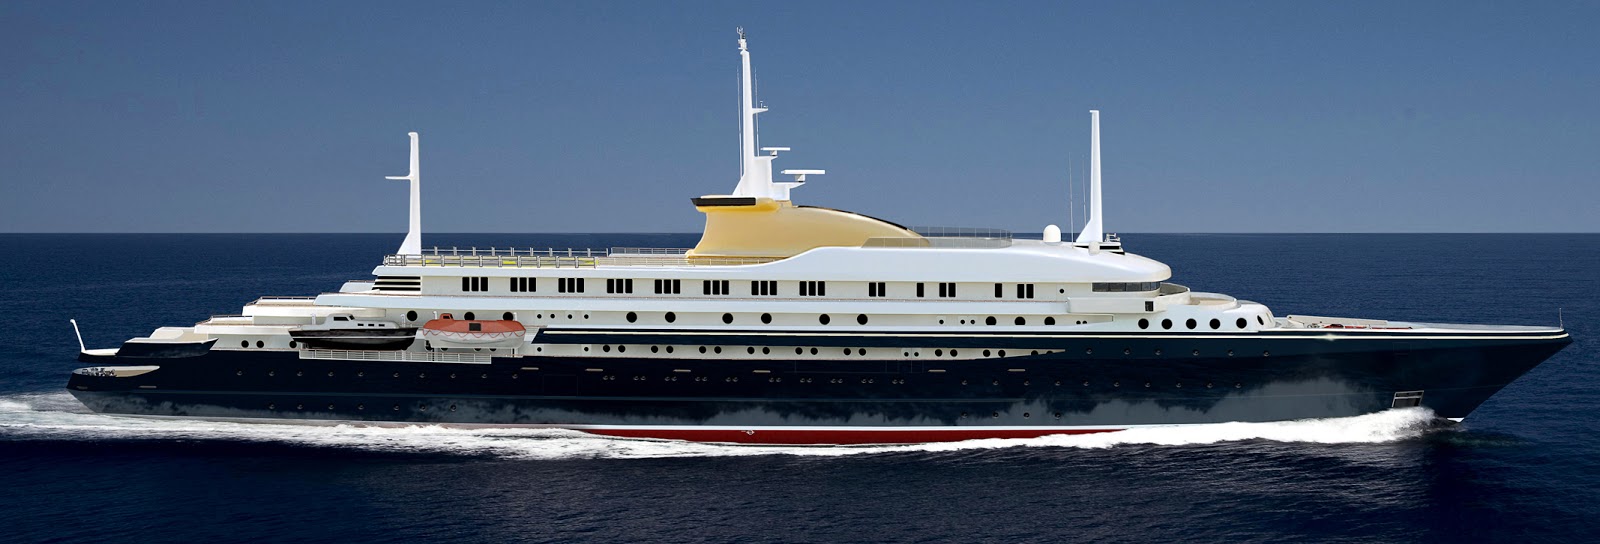 The Royal Yacht as Trade Ambassador